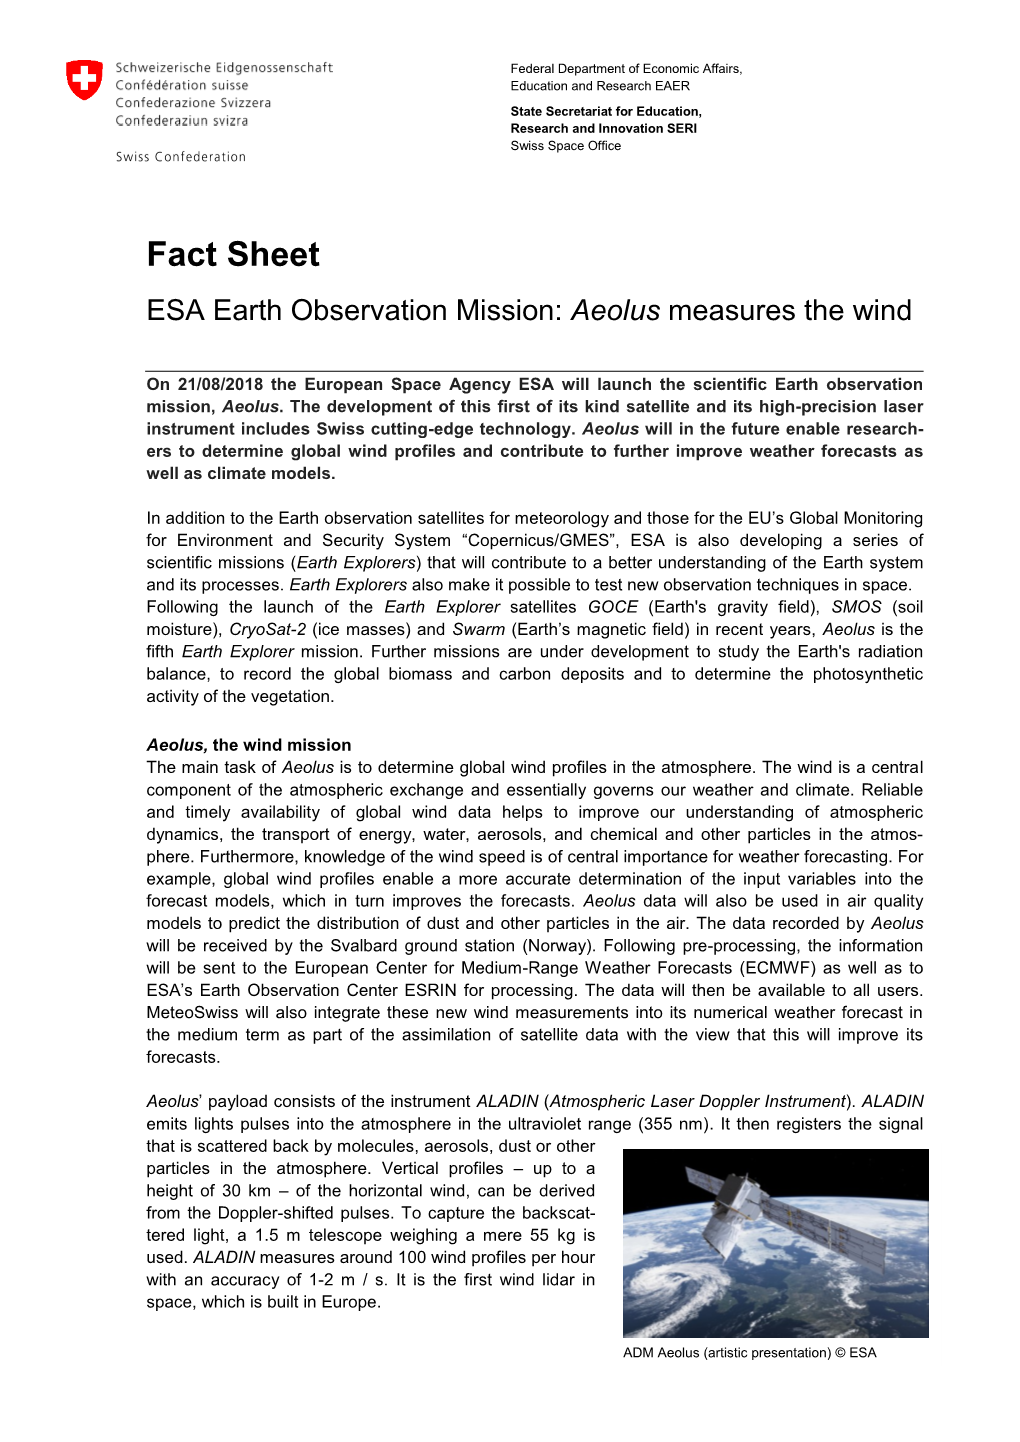 Factsheet ESA Earth Observation Mission Aeolus